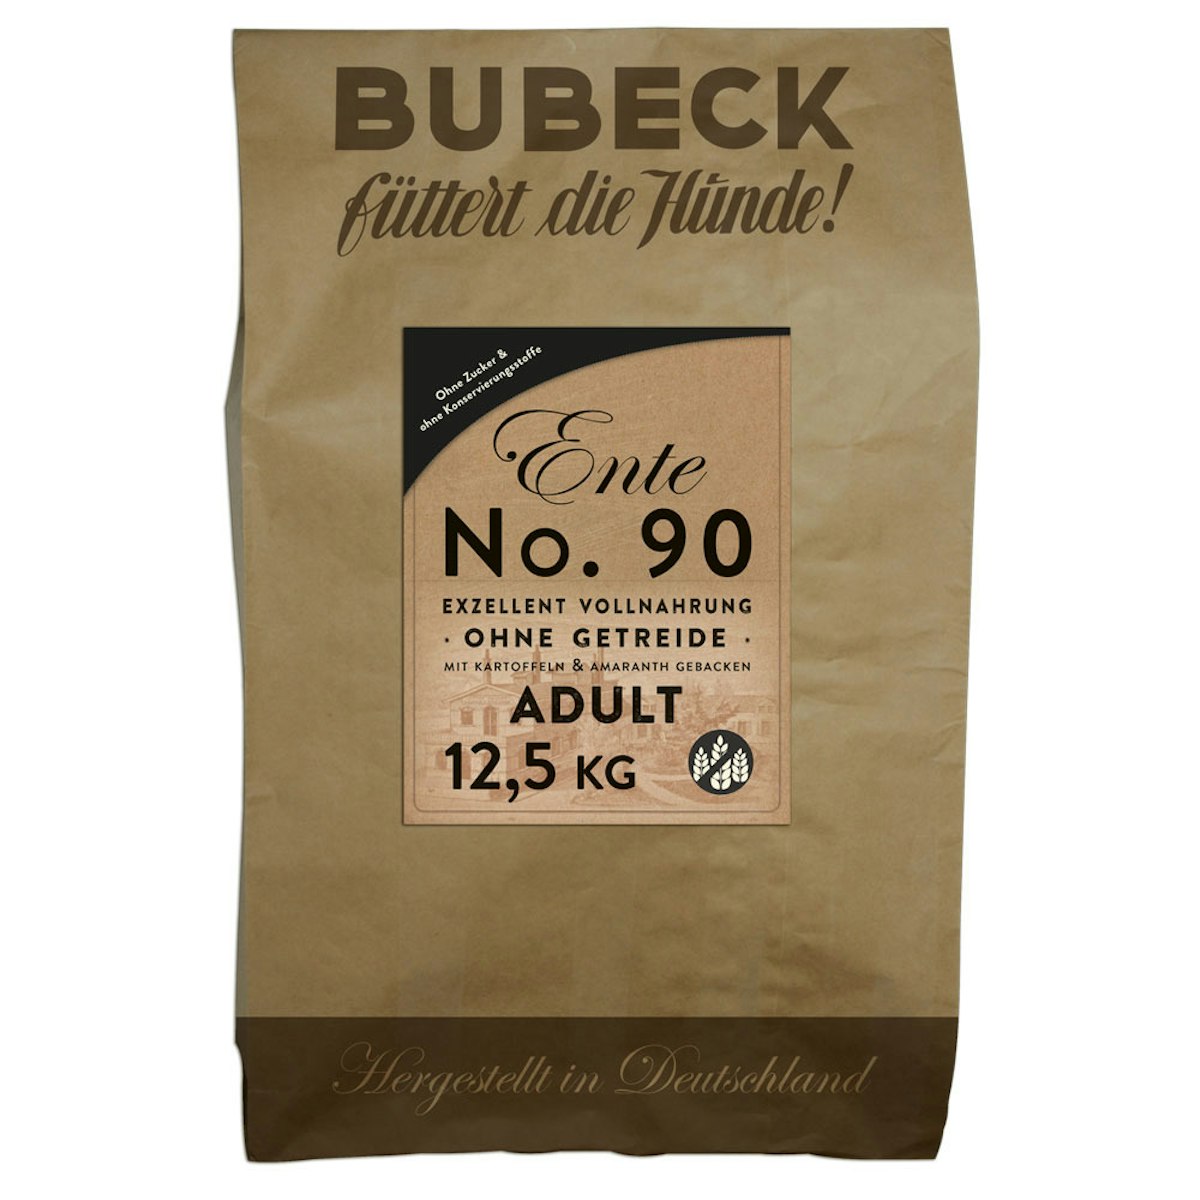 Bubeck Nr. 90 Adult Entenfleisch mit Kartoffel Hundetrockenfutter Sparpaket 2 x 12,5 Kilogramm